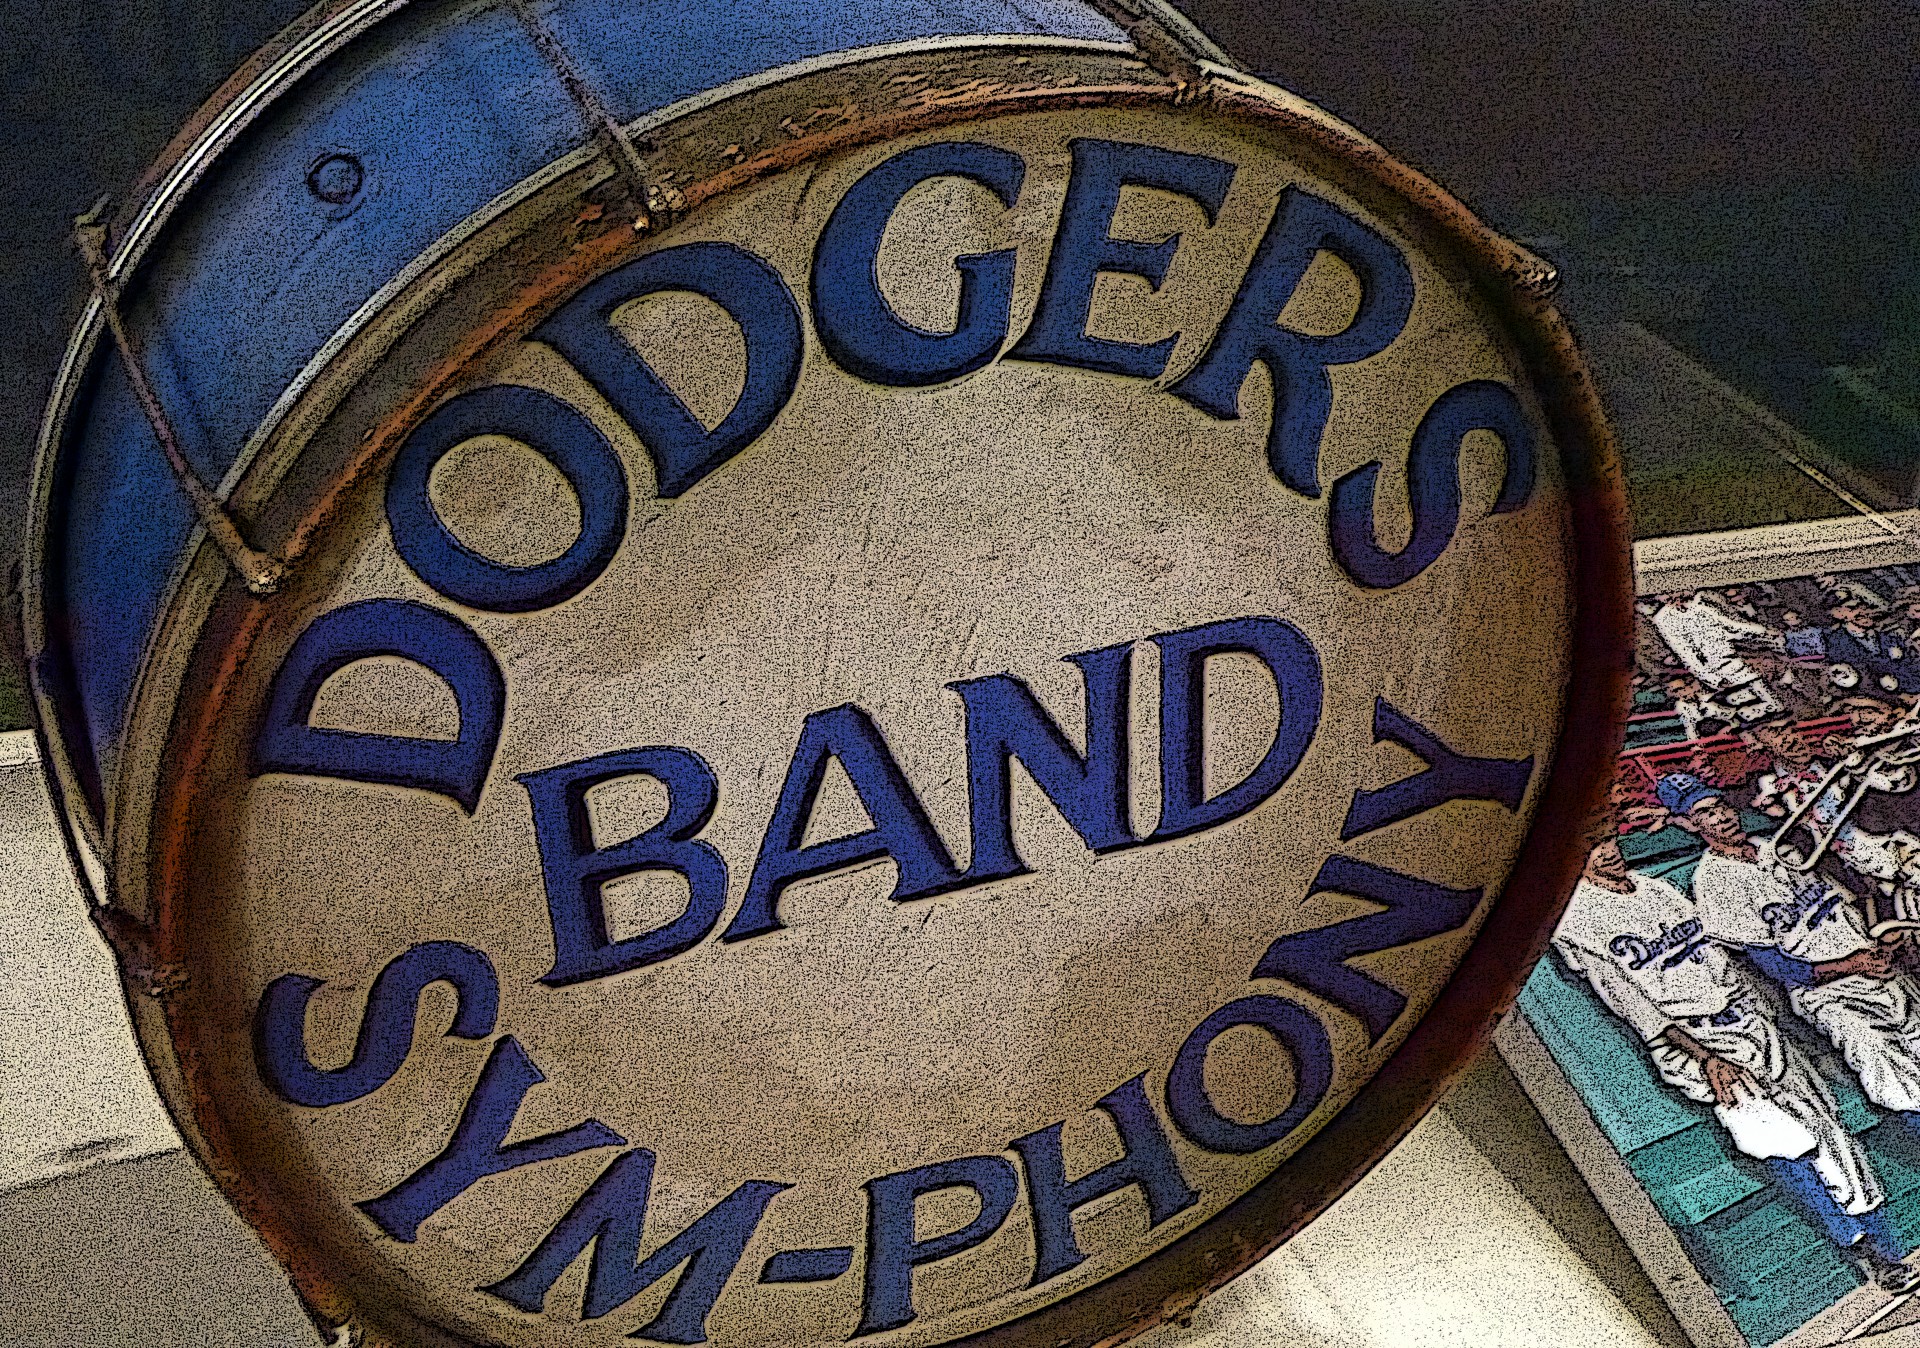 Vintage Dodgers bande tambour